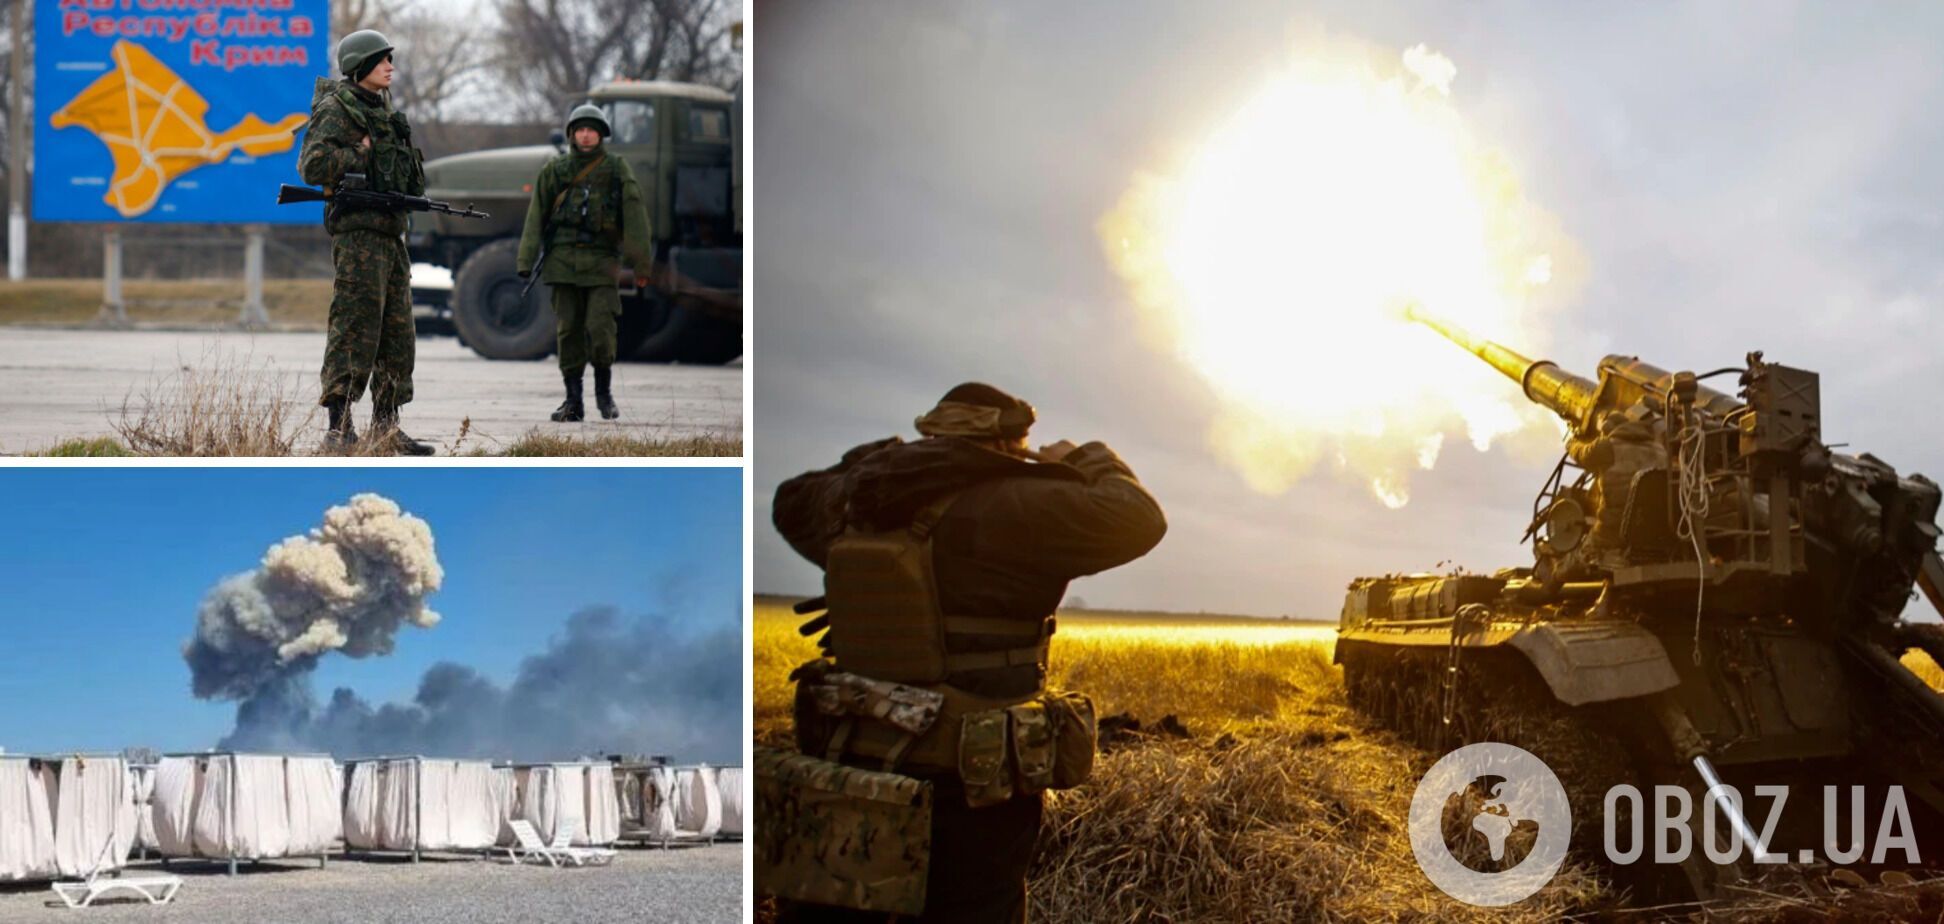 Удары ВСУ по военным базам в Крыму – легитимные, но после окончания войны встанет важная задача, – Нуланд